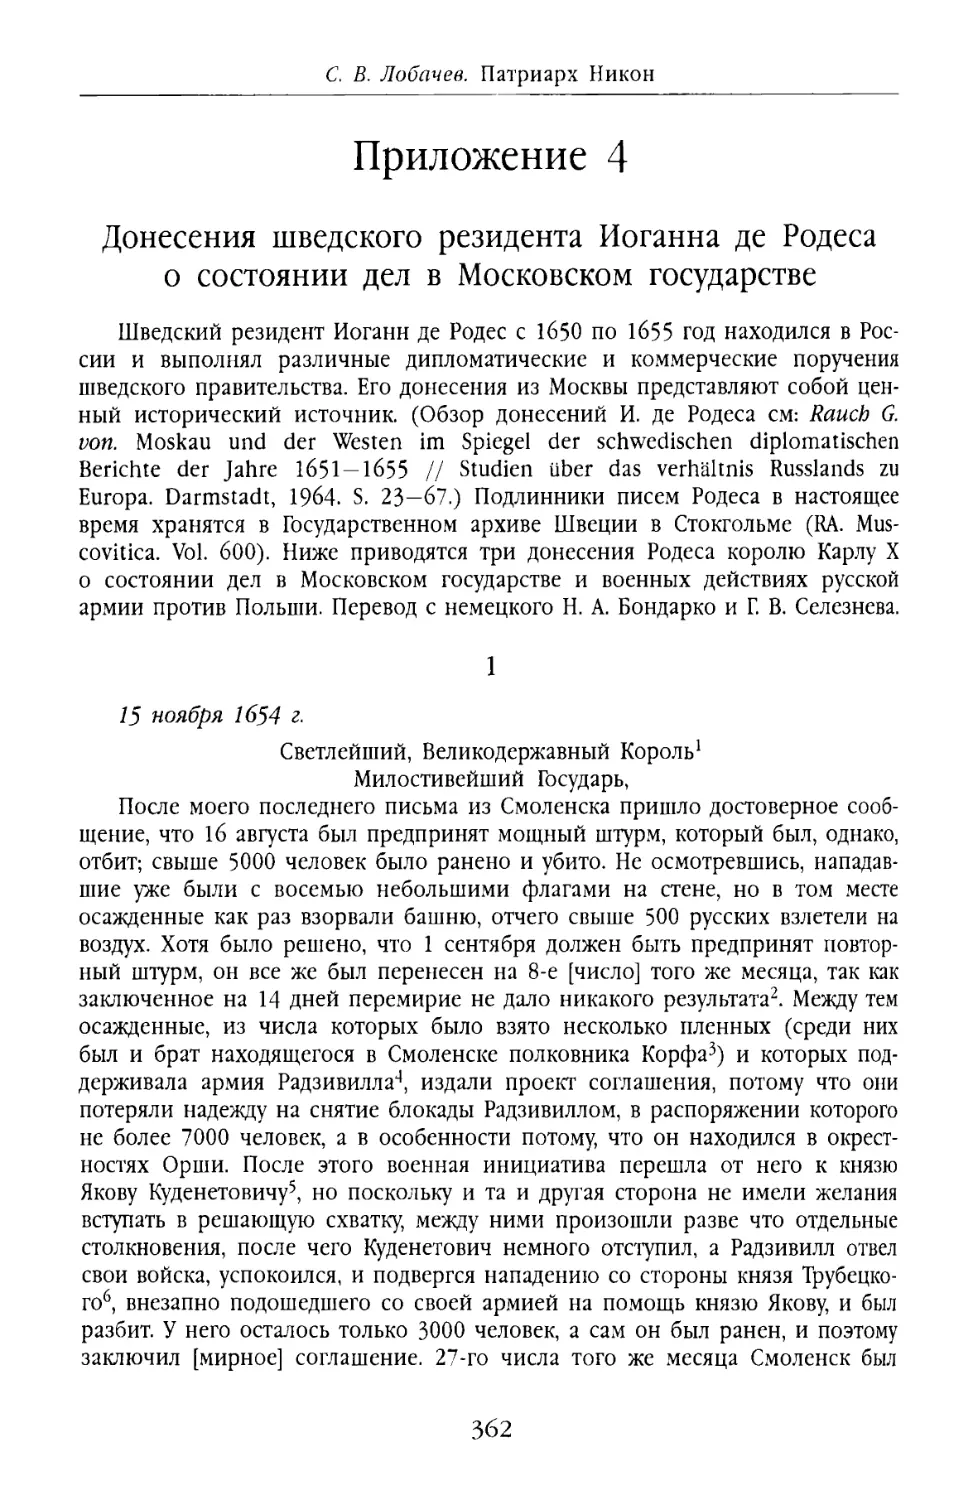 Приложение 4. Донесения шведского резидента Иоганна де Родеса о состоянии дел в Московском государстве